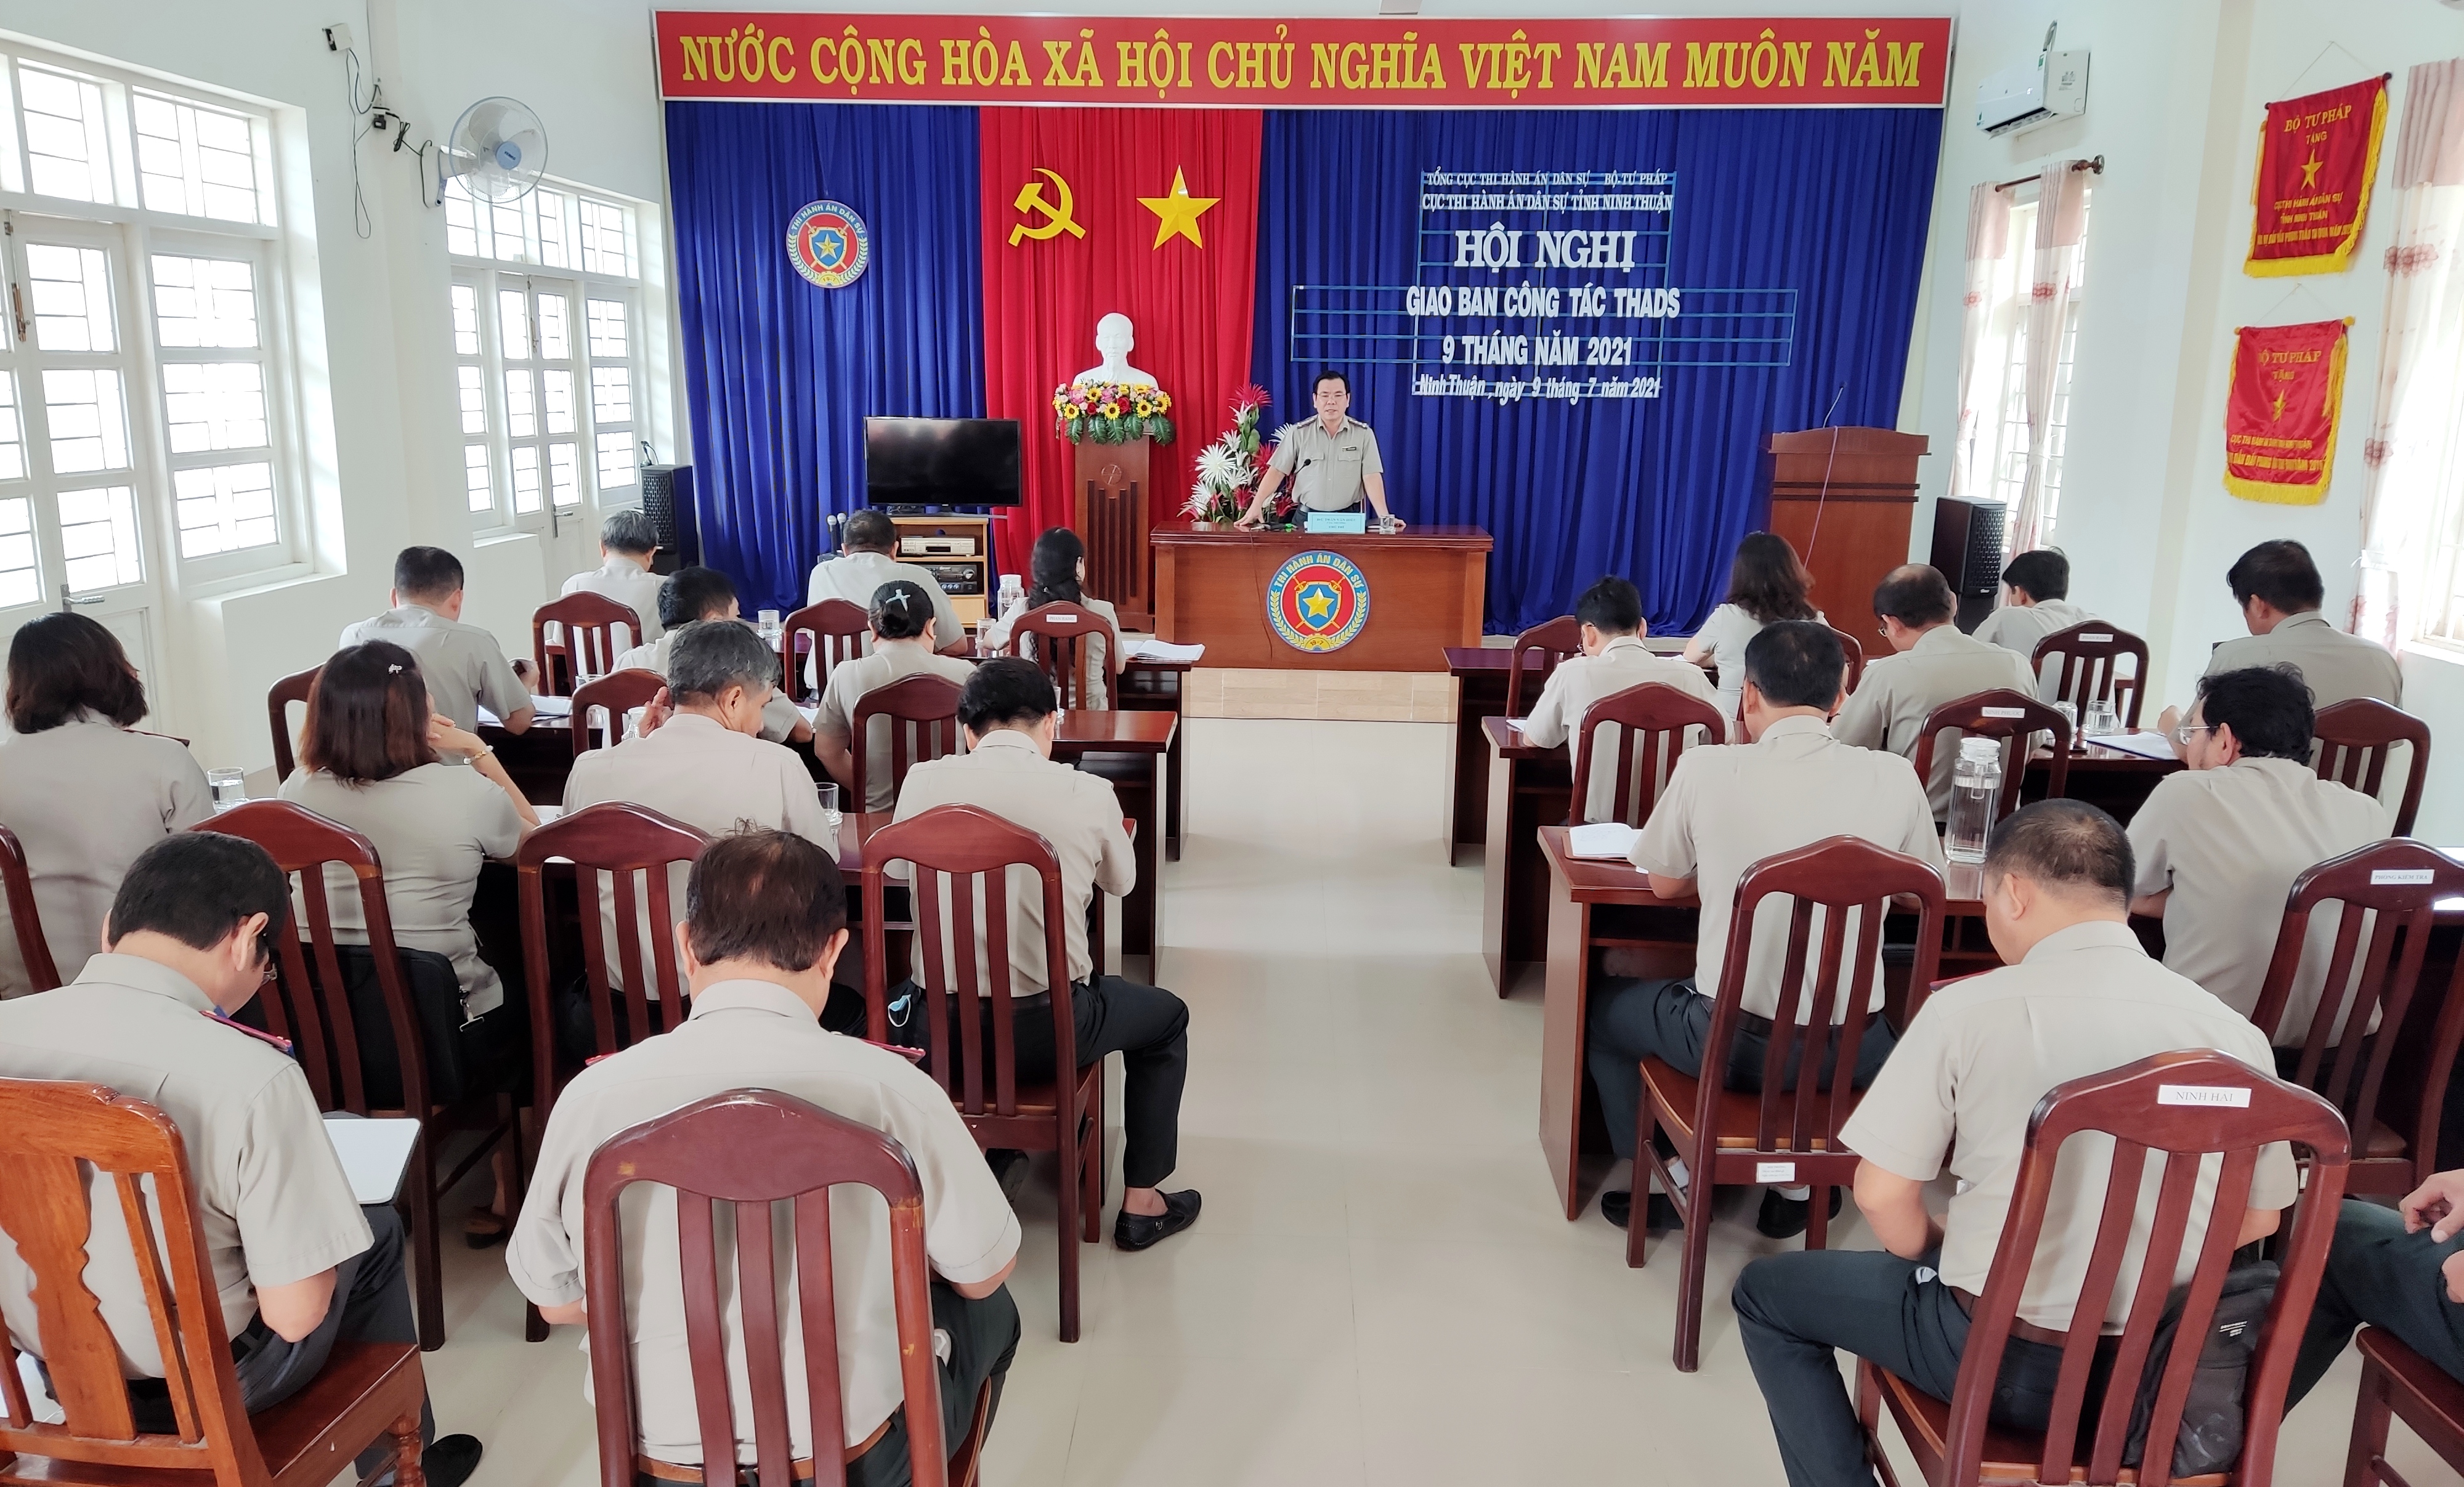 Cục Thi hành án dân sự tỉnh Ninh Thuận đẩy mạnh các phong trào thi đua yêu nước, tập trung lãnh đạo, chỉ đạo, quyết tâm hoàn thành chỉ tiêu, nhiệm vụ được giao năm 2021